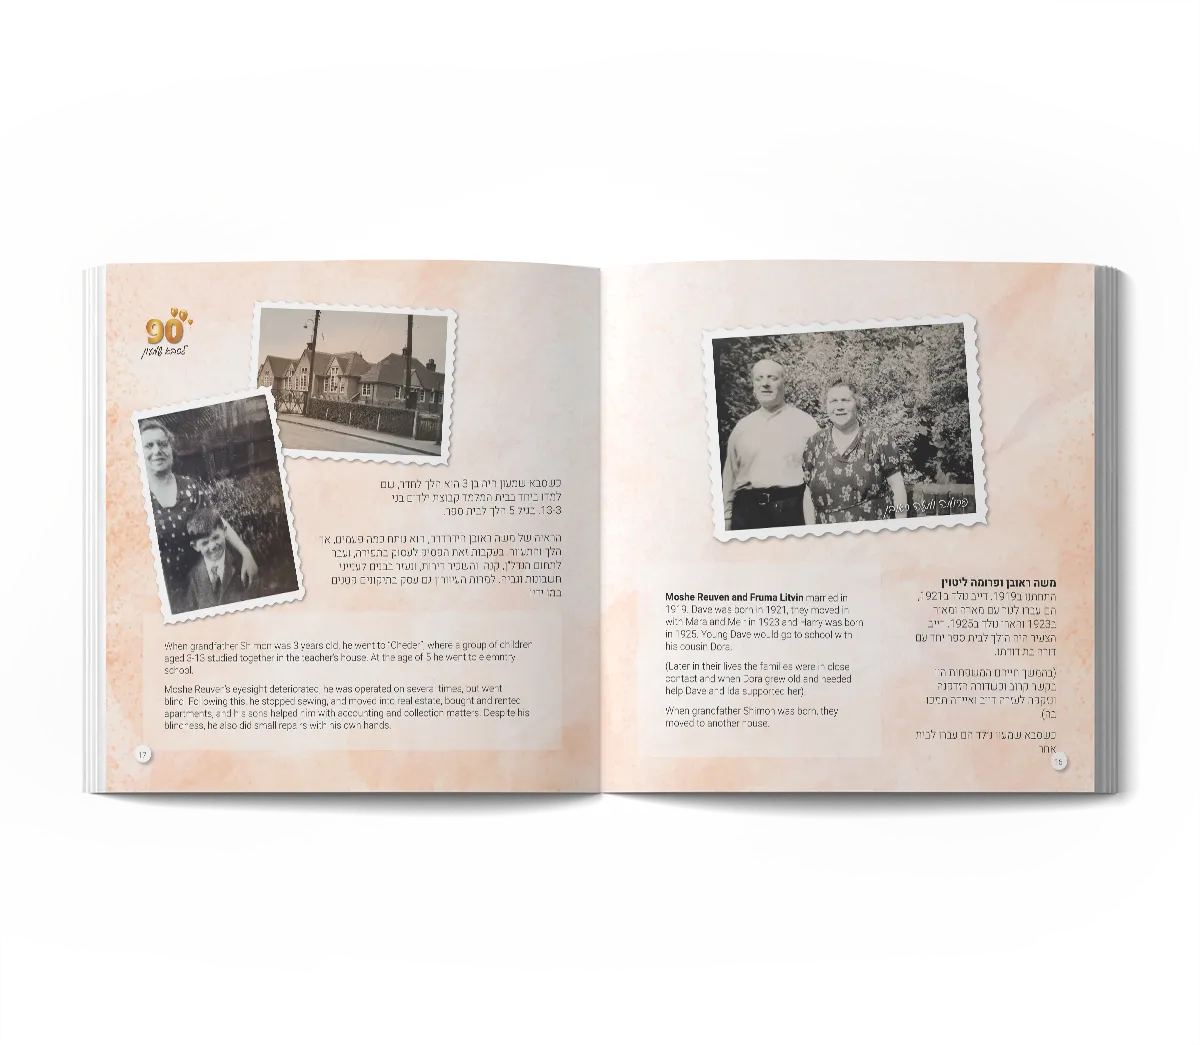 אלבום סיפור משפחתי ליומולדת 90 - כפולת עמודים לדוגמא